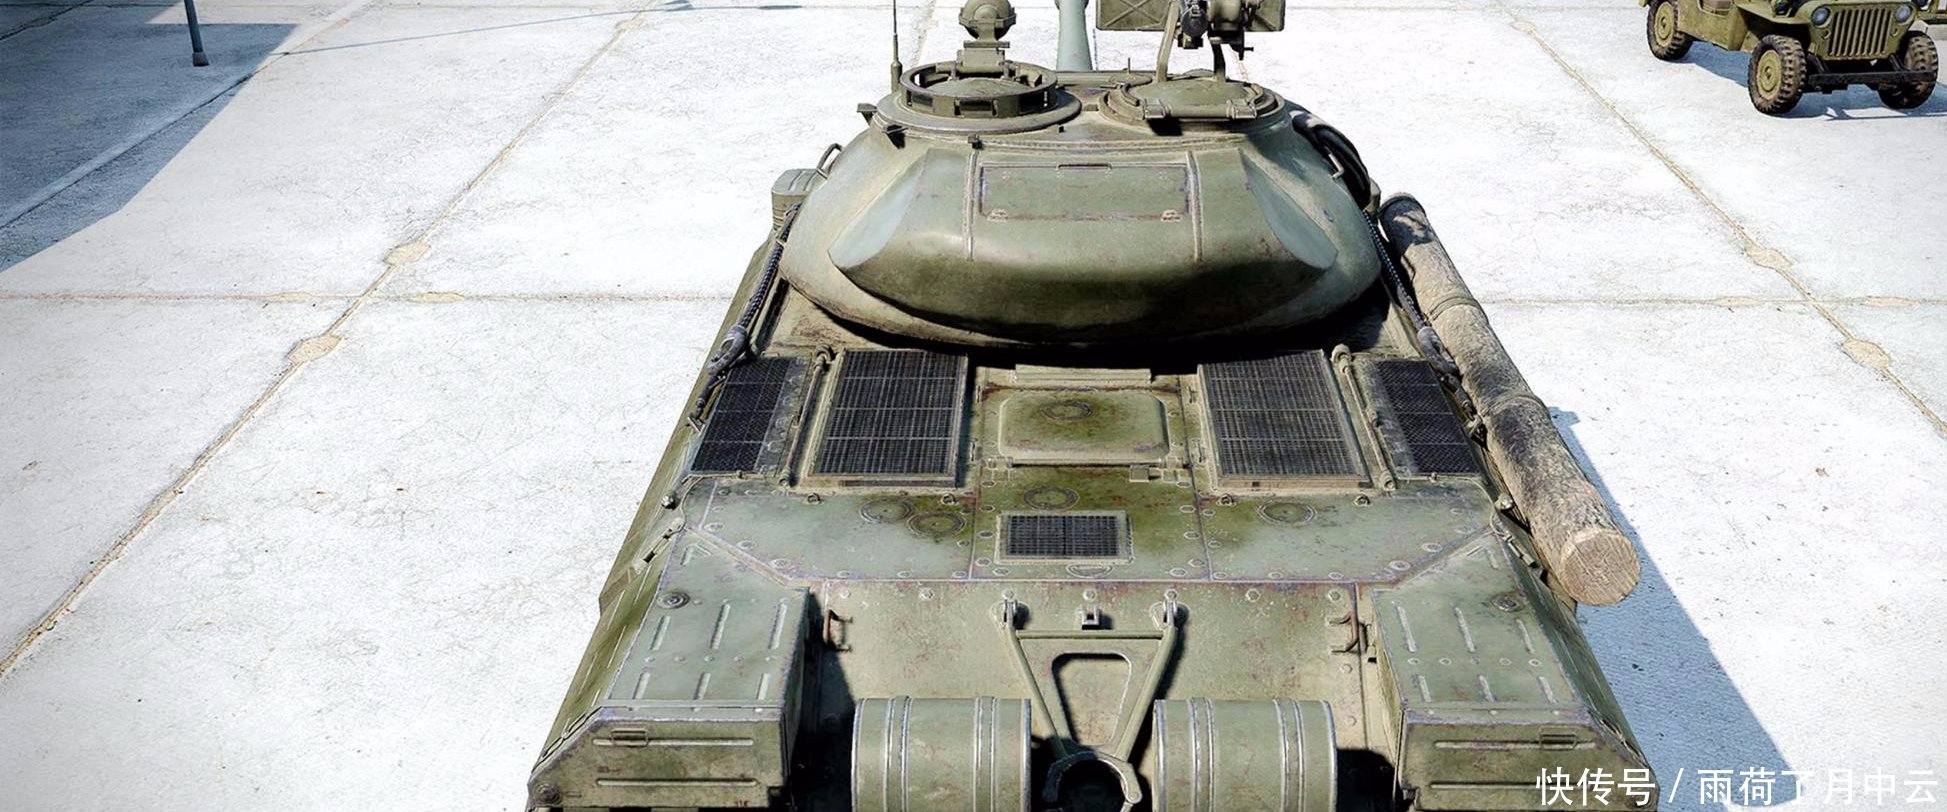 虎王坦克正面装甲能否抵挡住一发RPG-7会怎么